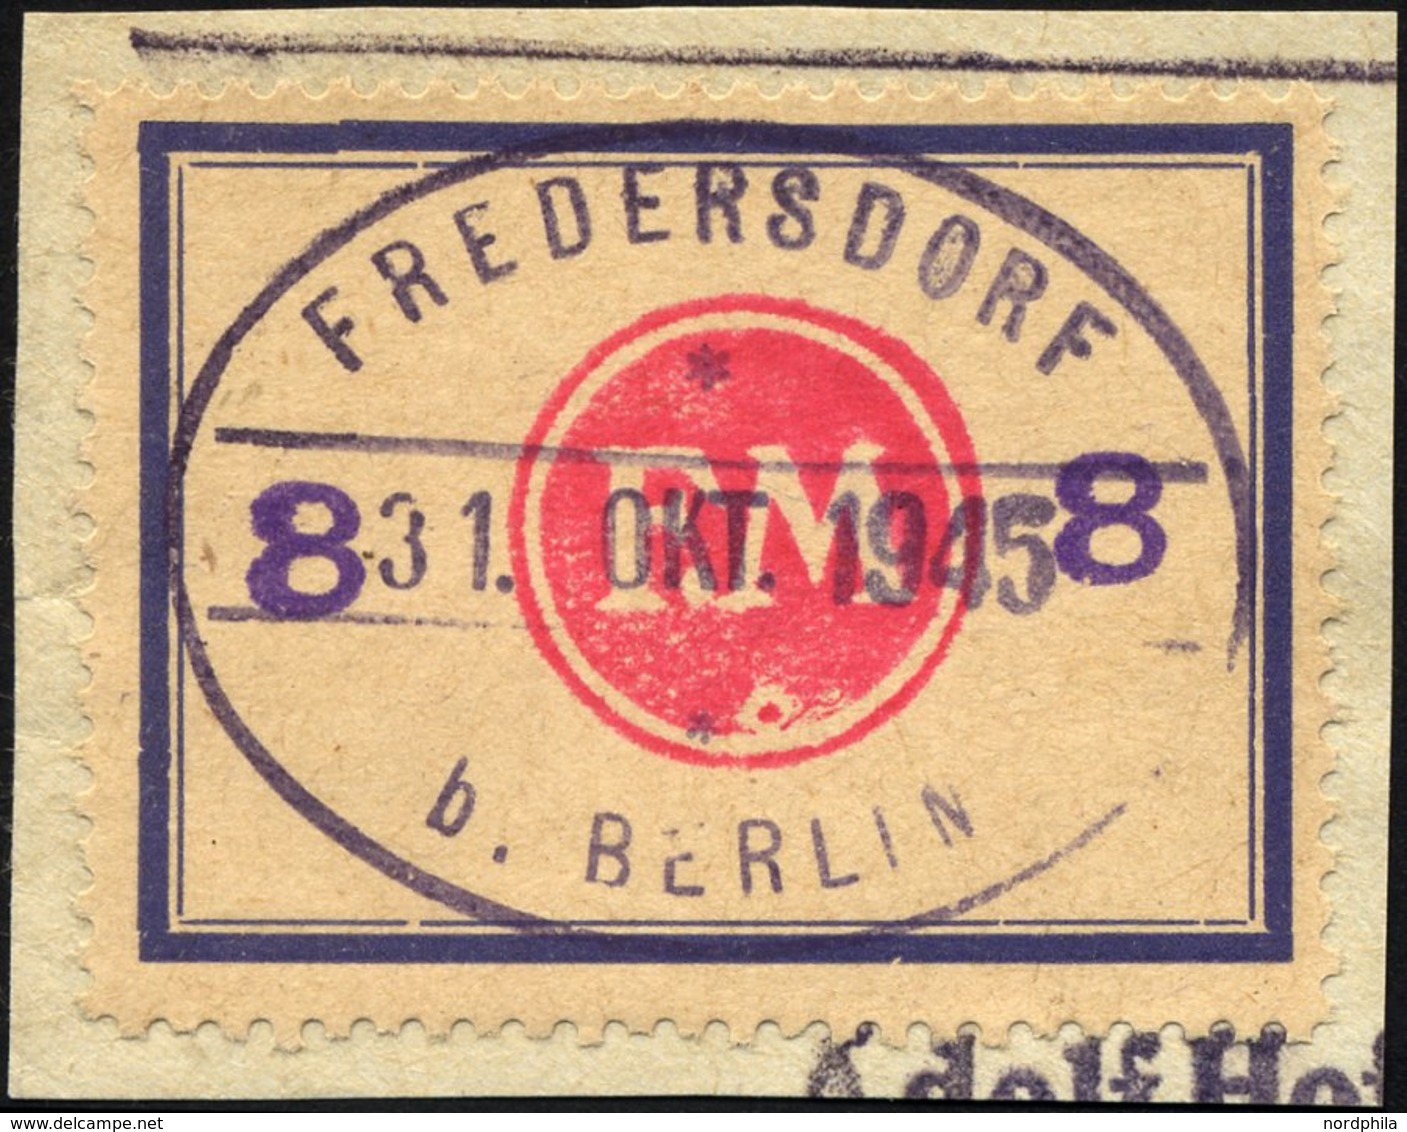 FREDERSDORF Sp 172F BrfStk, 1945, 8 Pf., Rahmengröße 43x31.5 Mm, Große Wertziffern, Mit Abart Wertziffern Seitlich, Prac - Private & Local Mails